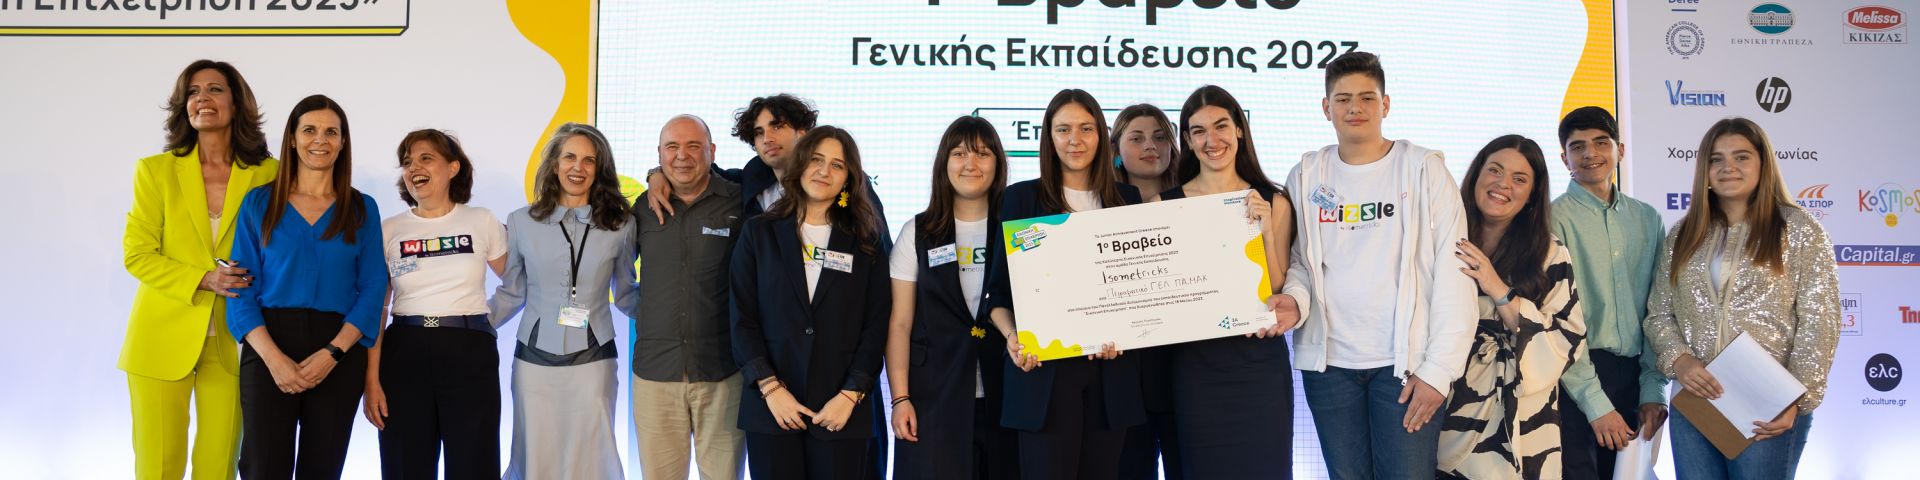 Φωτογραφία με τα άτομα που βραβεύτηκαν στον 18ο Πανελλαδικό διαγωνισμό για την καλύτερη εικονική επιχείρηση του 2023 από το Junior Achievment Greece